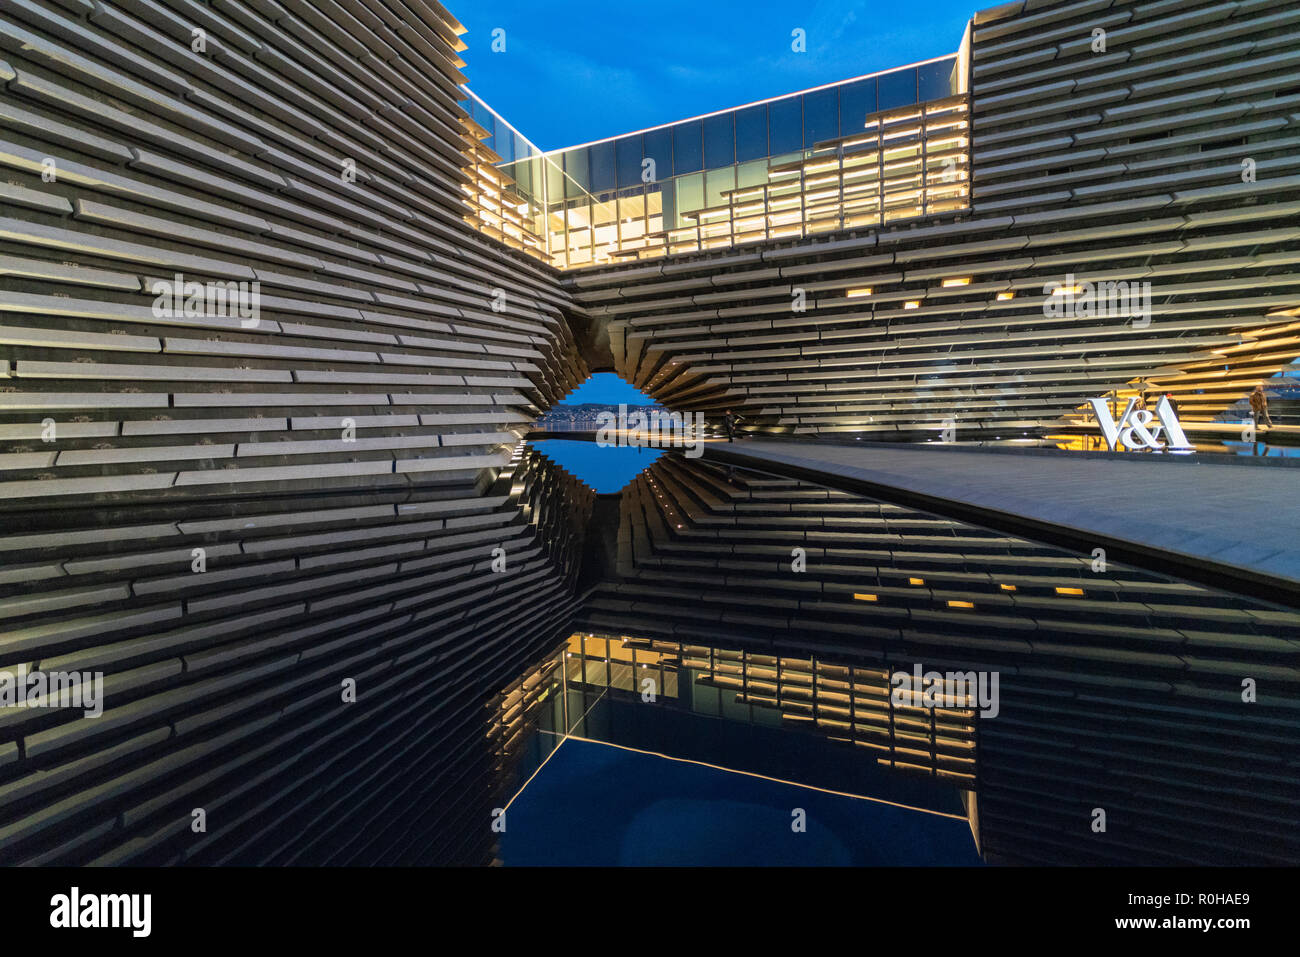 Außenansicht des neuen V&A Museum in den Abend in Dundee, Schottland, Großbritannien. Architekten Kengo Kuma. Stockfoto